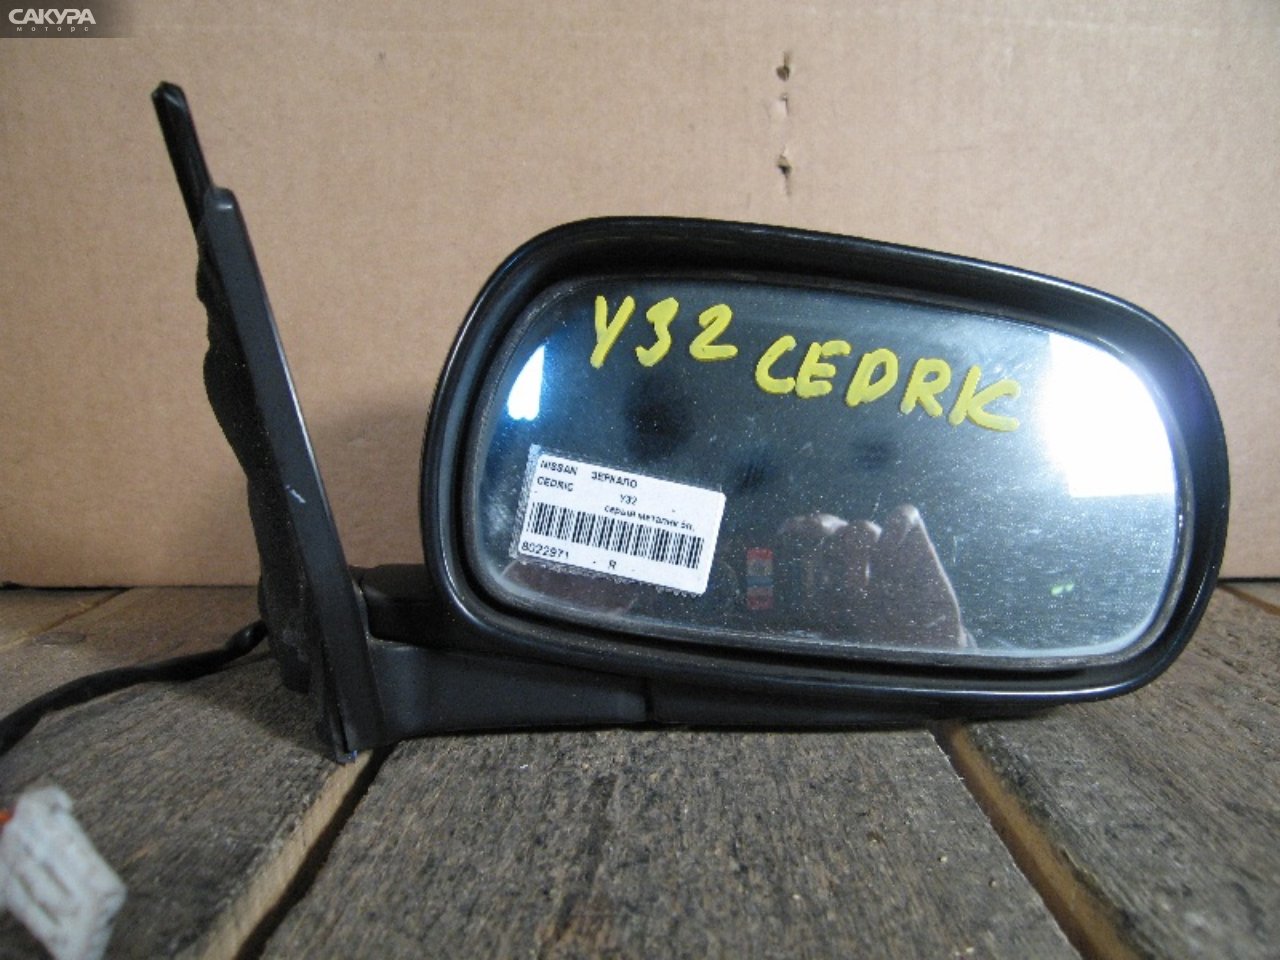 Зеркало боковое правое Nissan Cedric Y32: купить в Сакура Абакан.